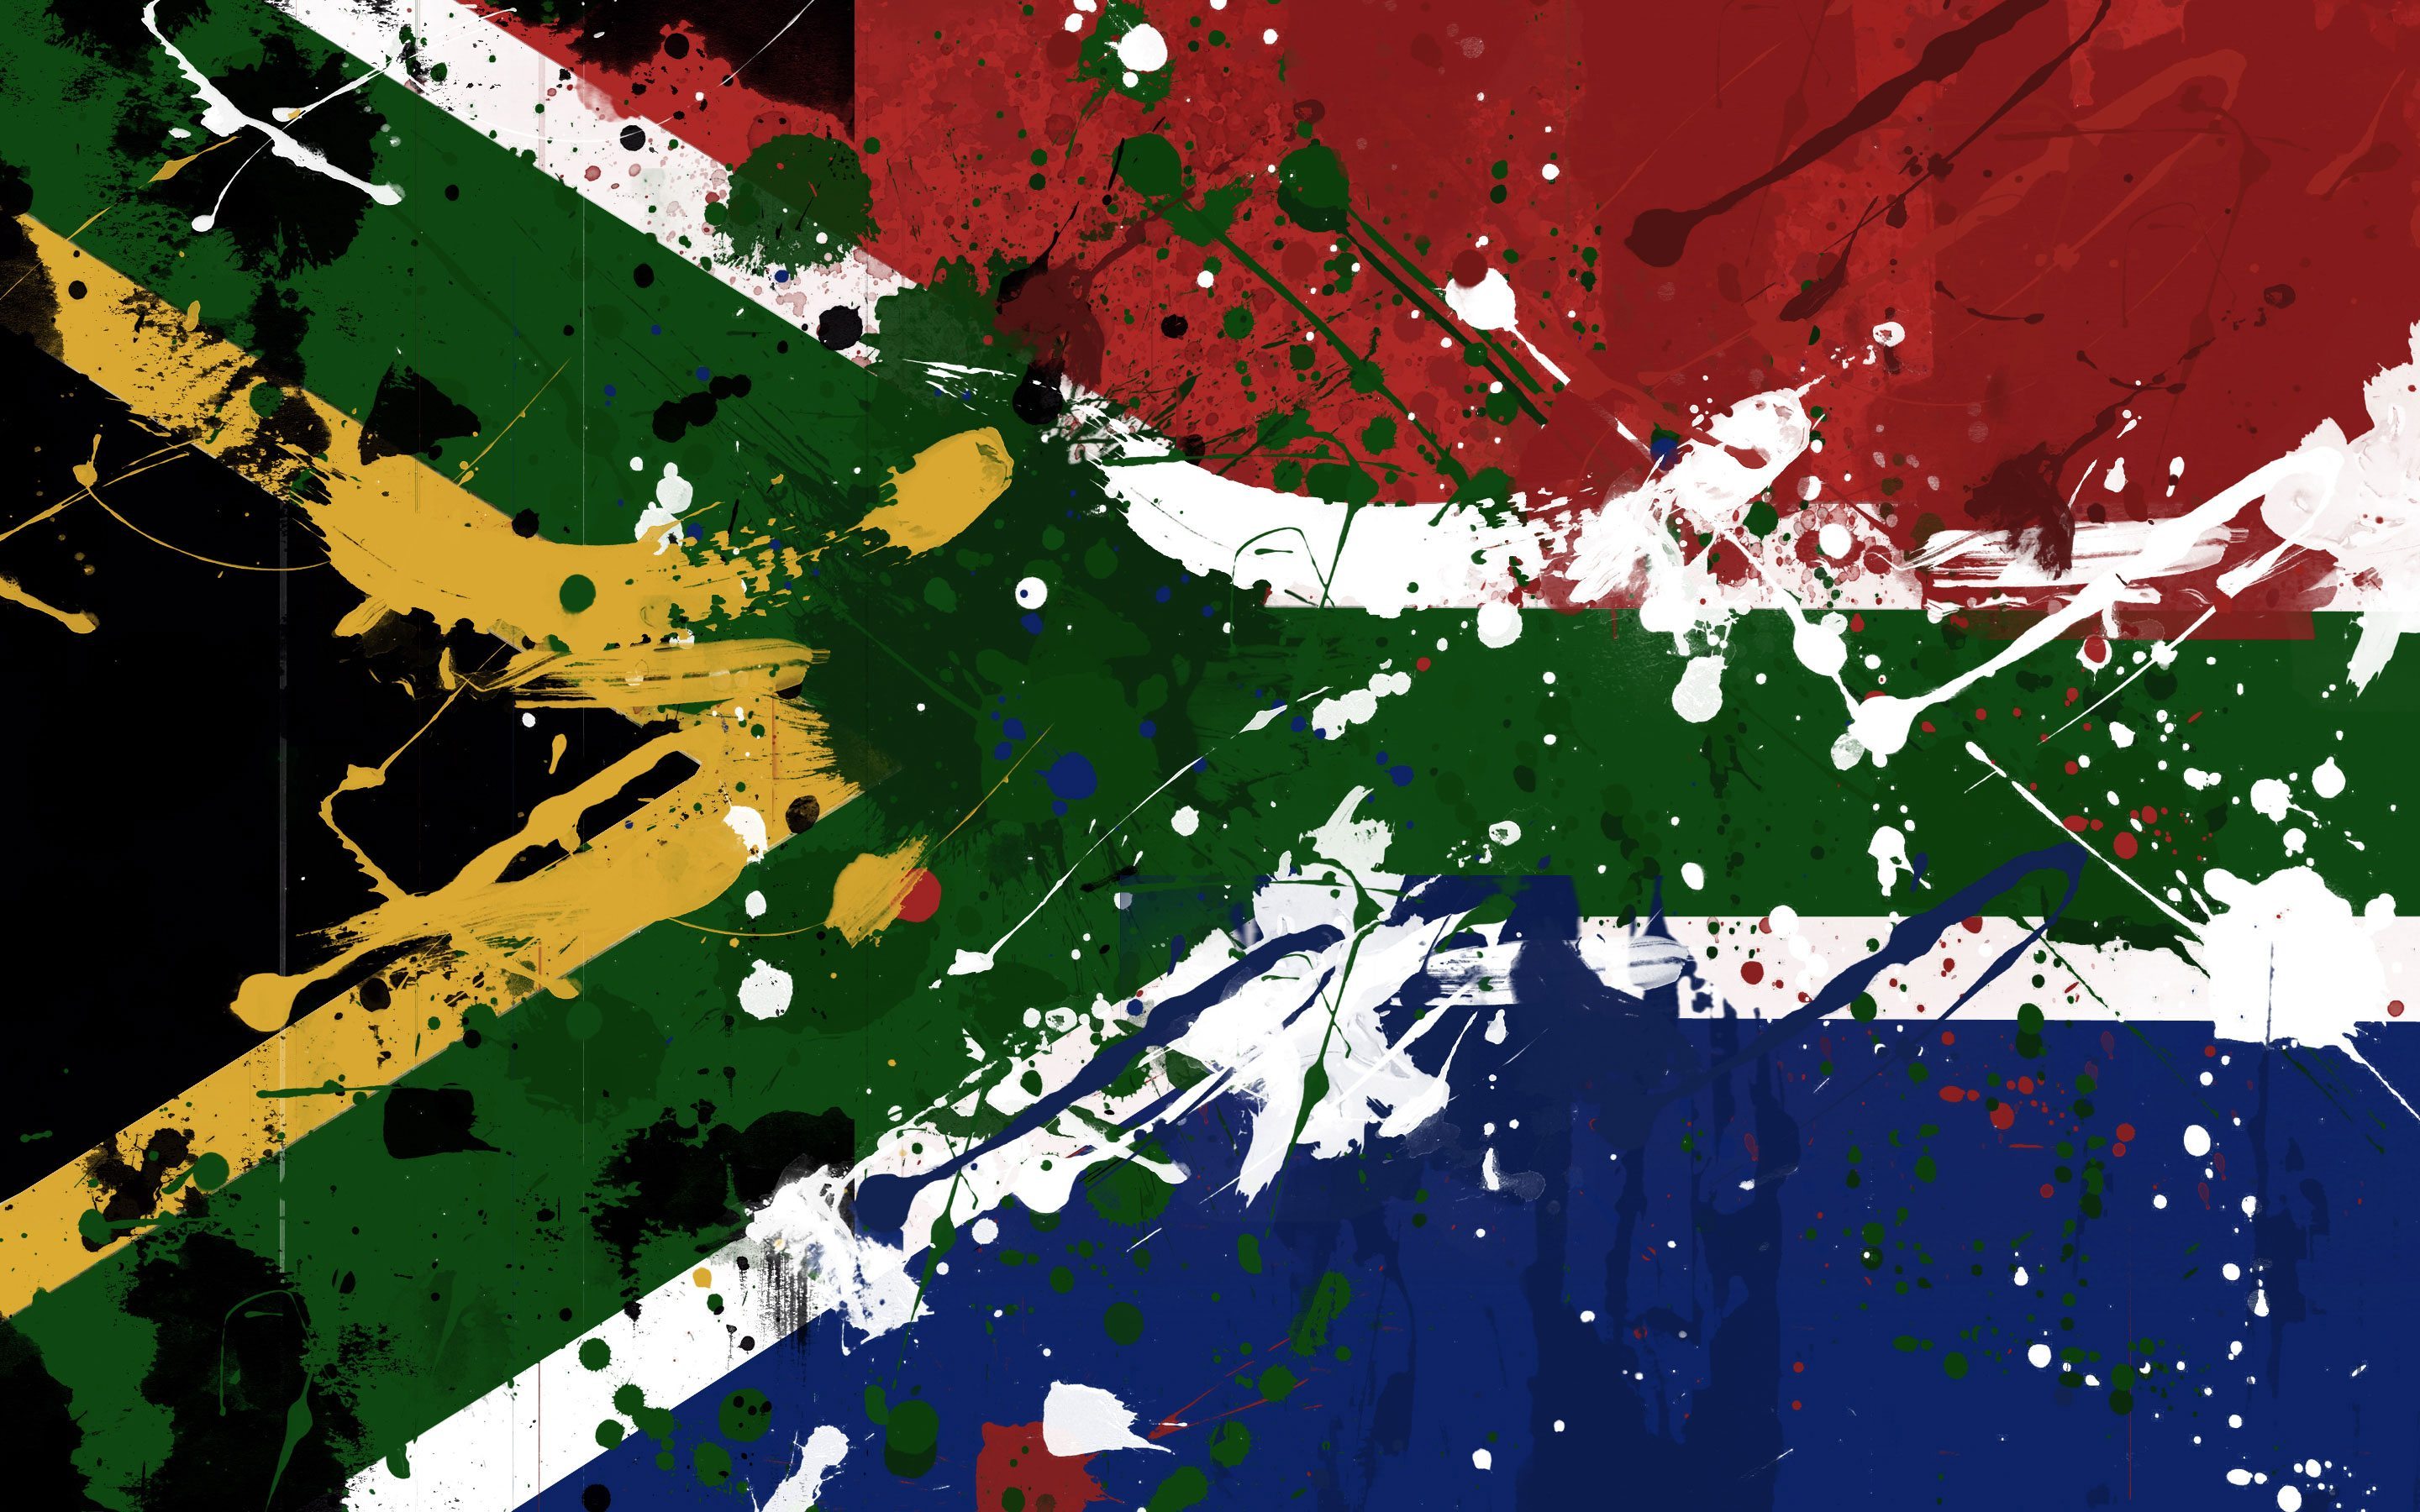 27+] South Africa Flag Wallpapers - WallpaperSafari